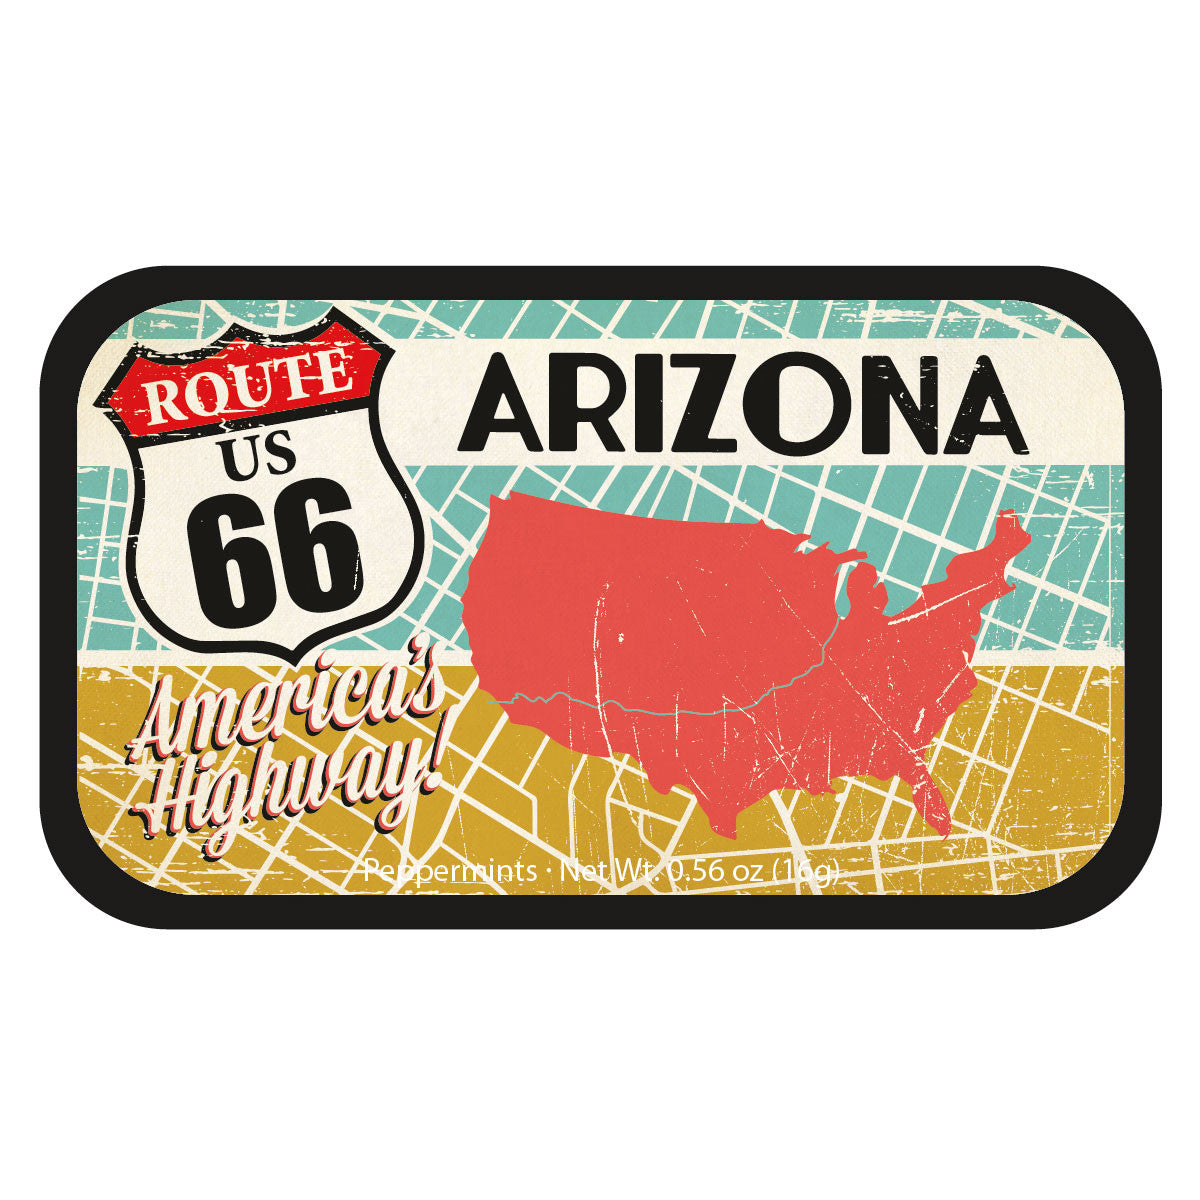 Route 66 Map Arizona - 1290S